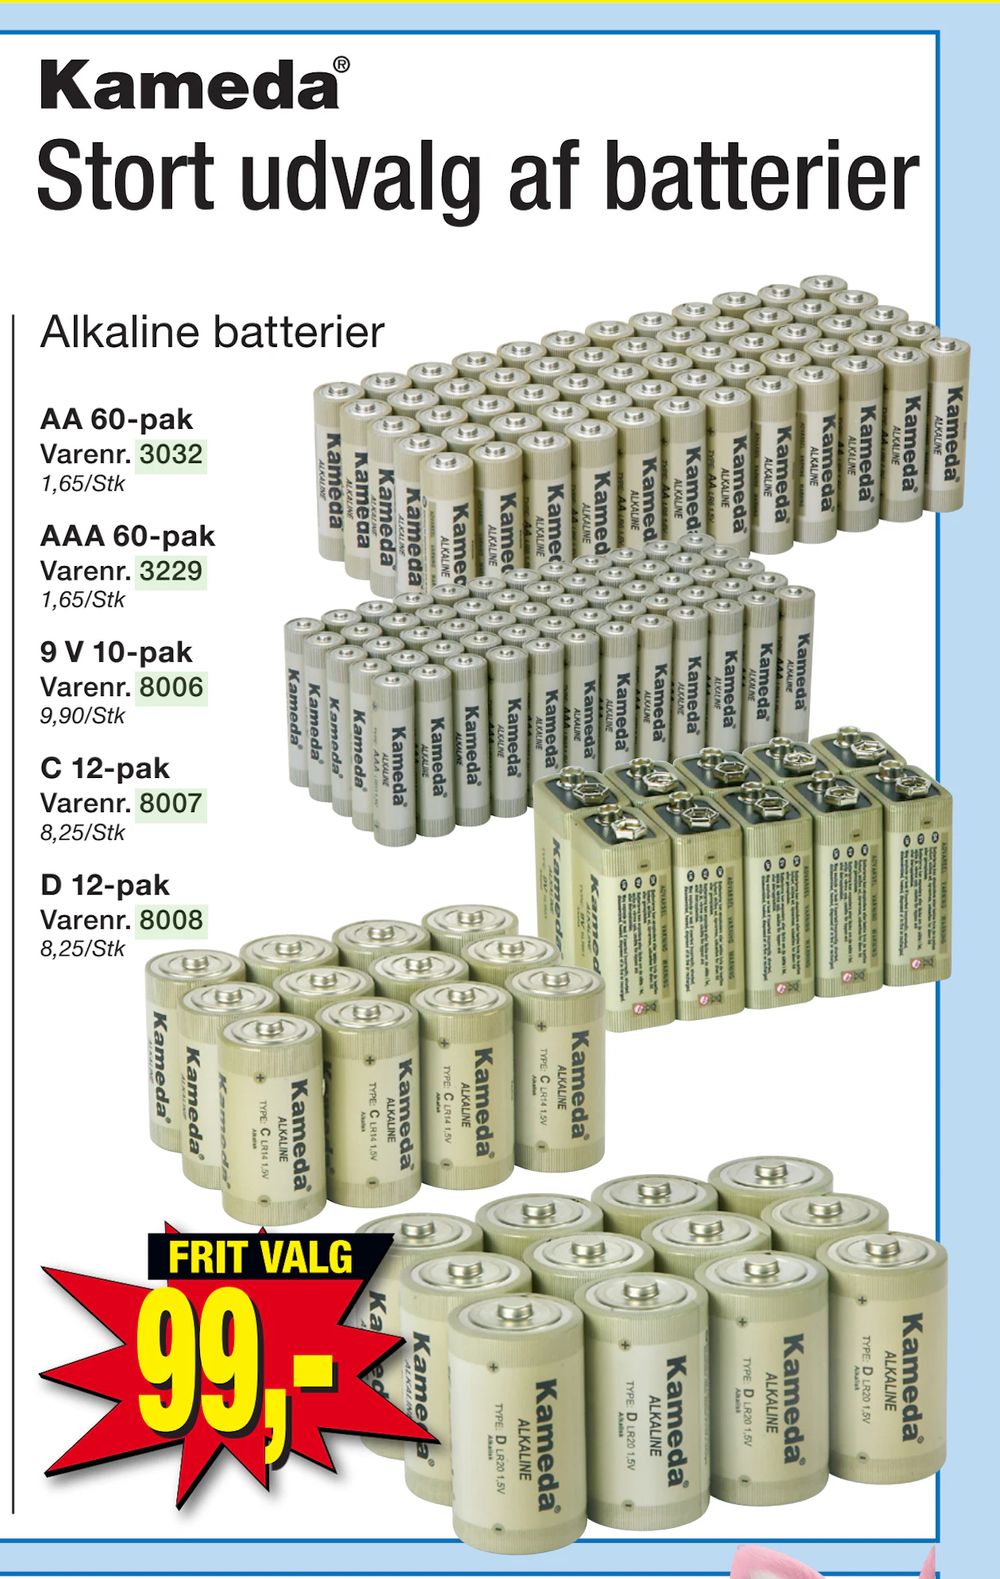 Tilbud på Alkaline batterier fra Harald Nyborg til 99 kr.